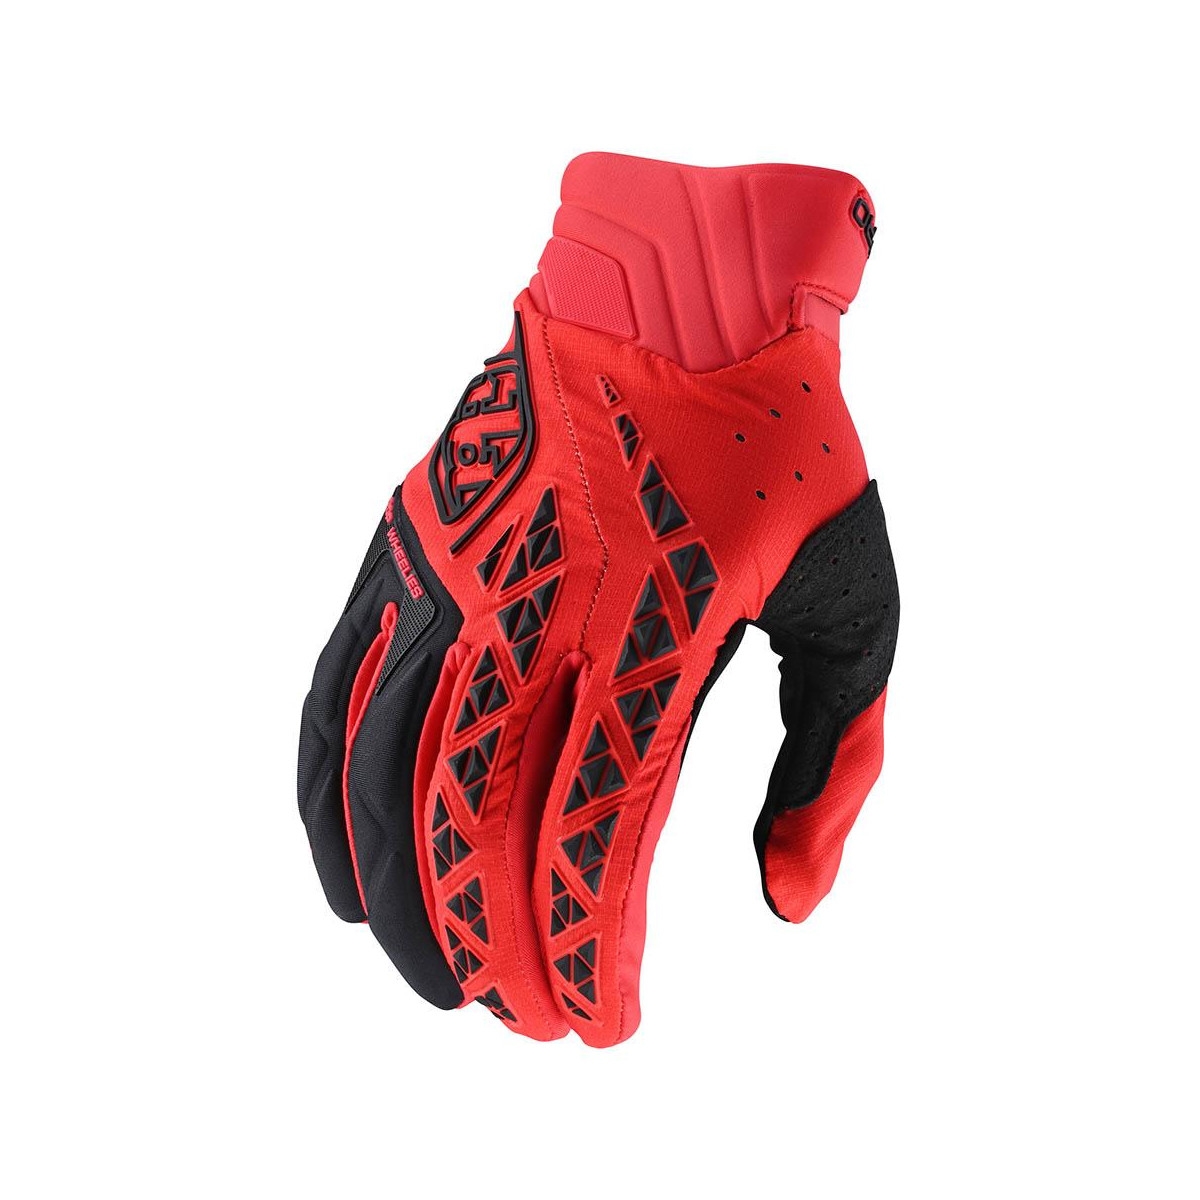 Gloves SE Pro Black/Red Size XXL